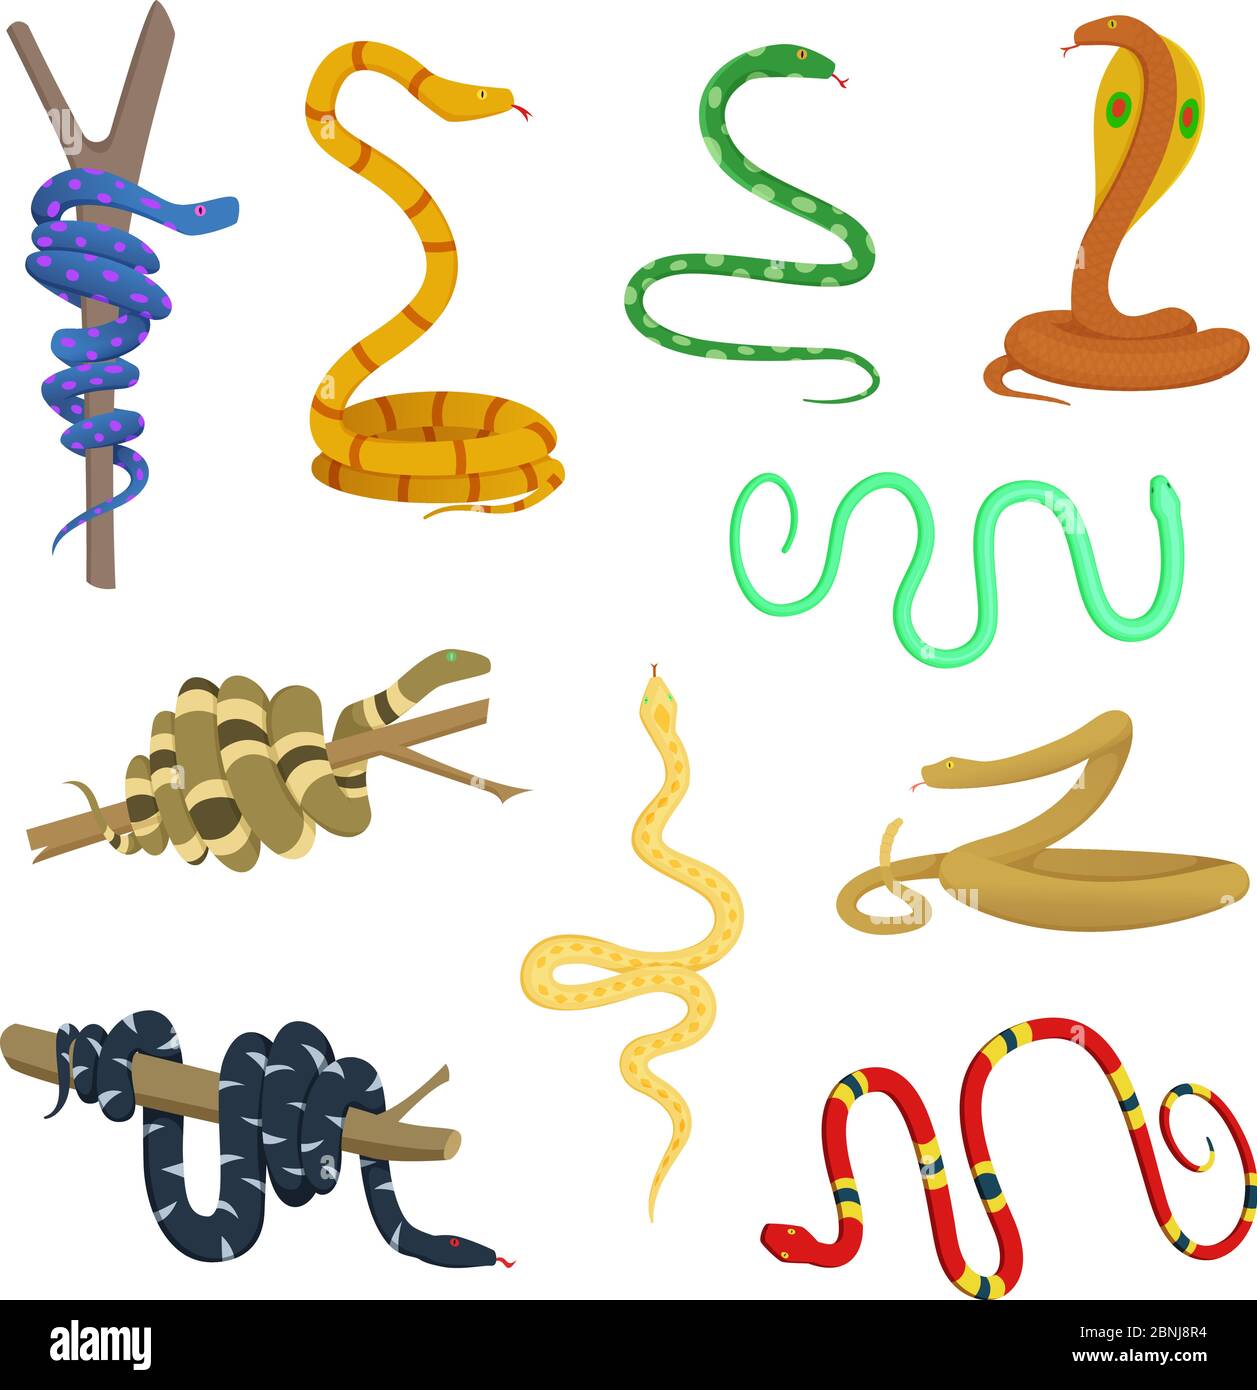 Cartoon-Bilder von verschiedenen Schlangen und Reptilien Stock Vektor